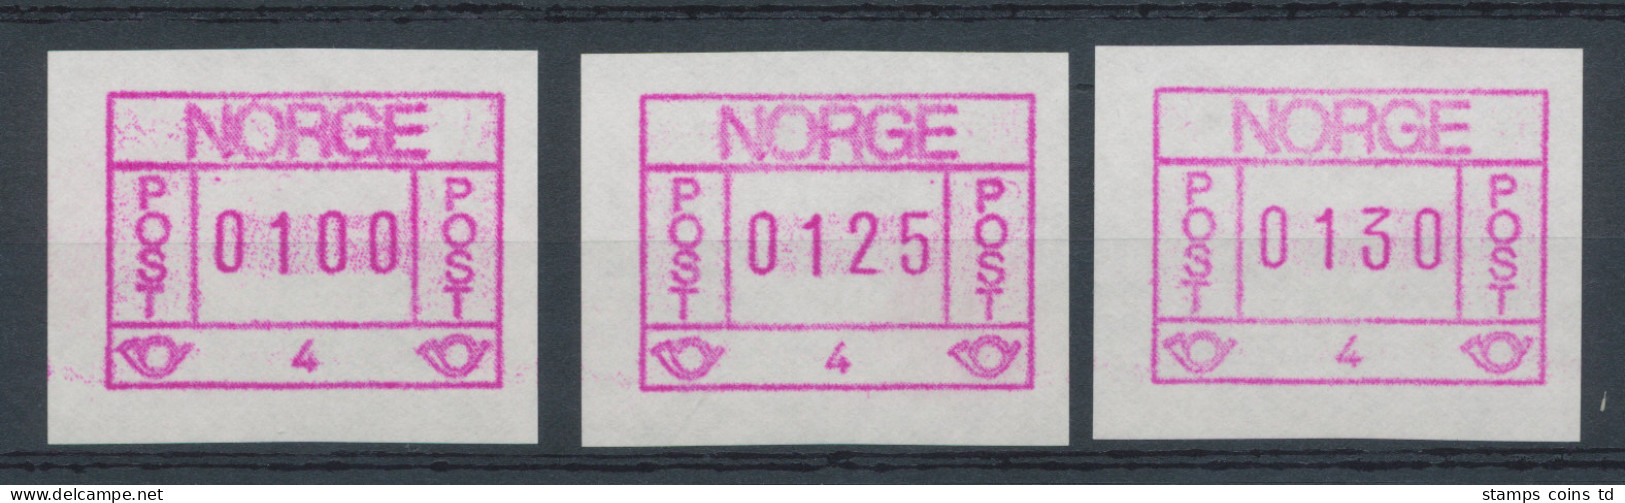 Norwegen Frama-ATM 1978, Aut.-Nr. 4 (Trondheim) Tastensatz 100-125-130 ** - Machine Labels [ATM]